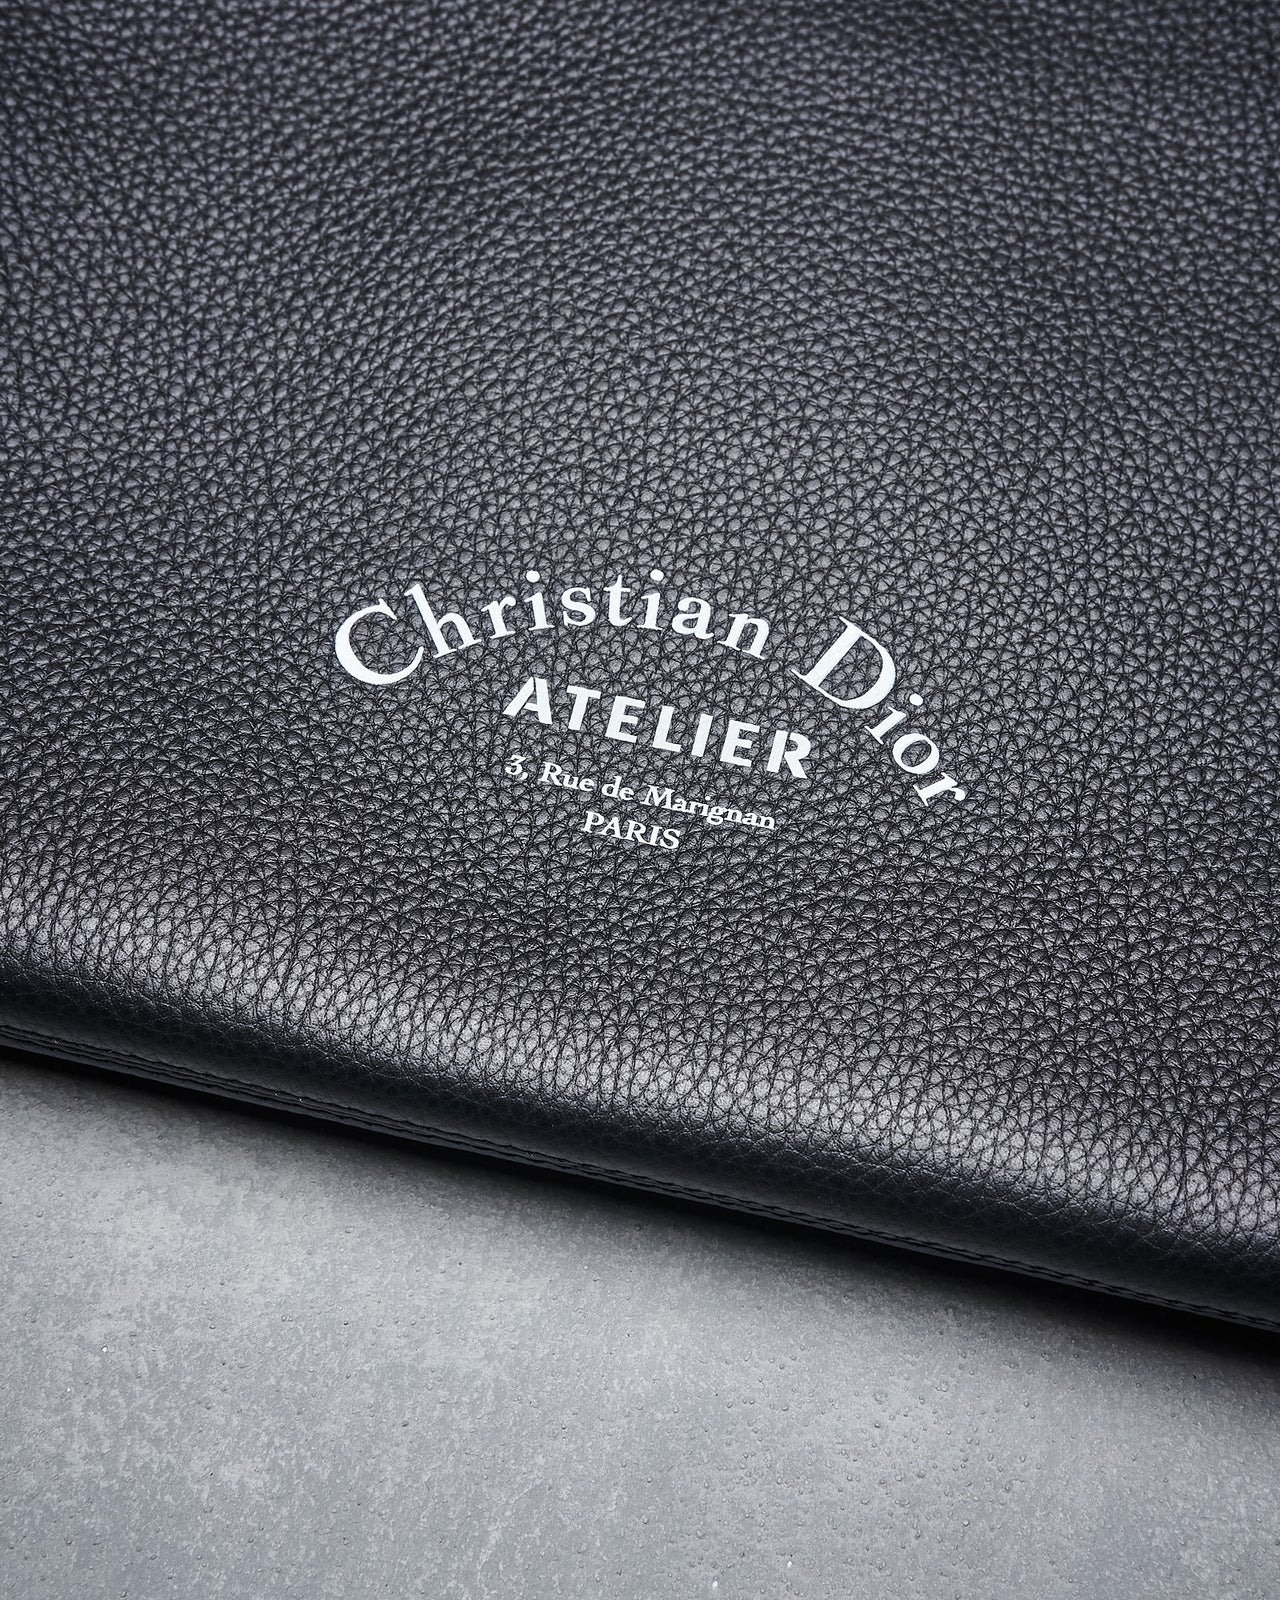 Dior SS 2018 Dior Homme Atelier portfolio zip clutch